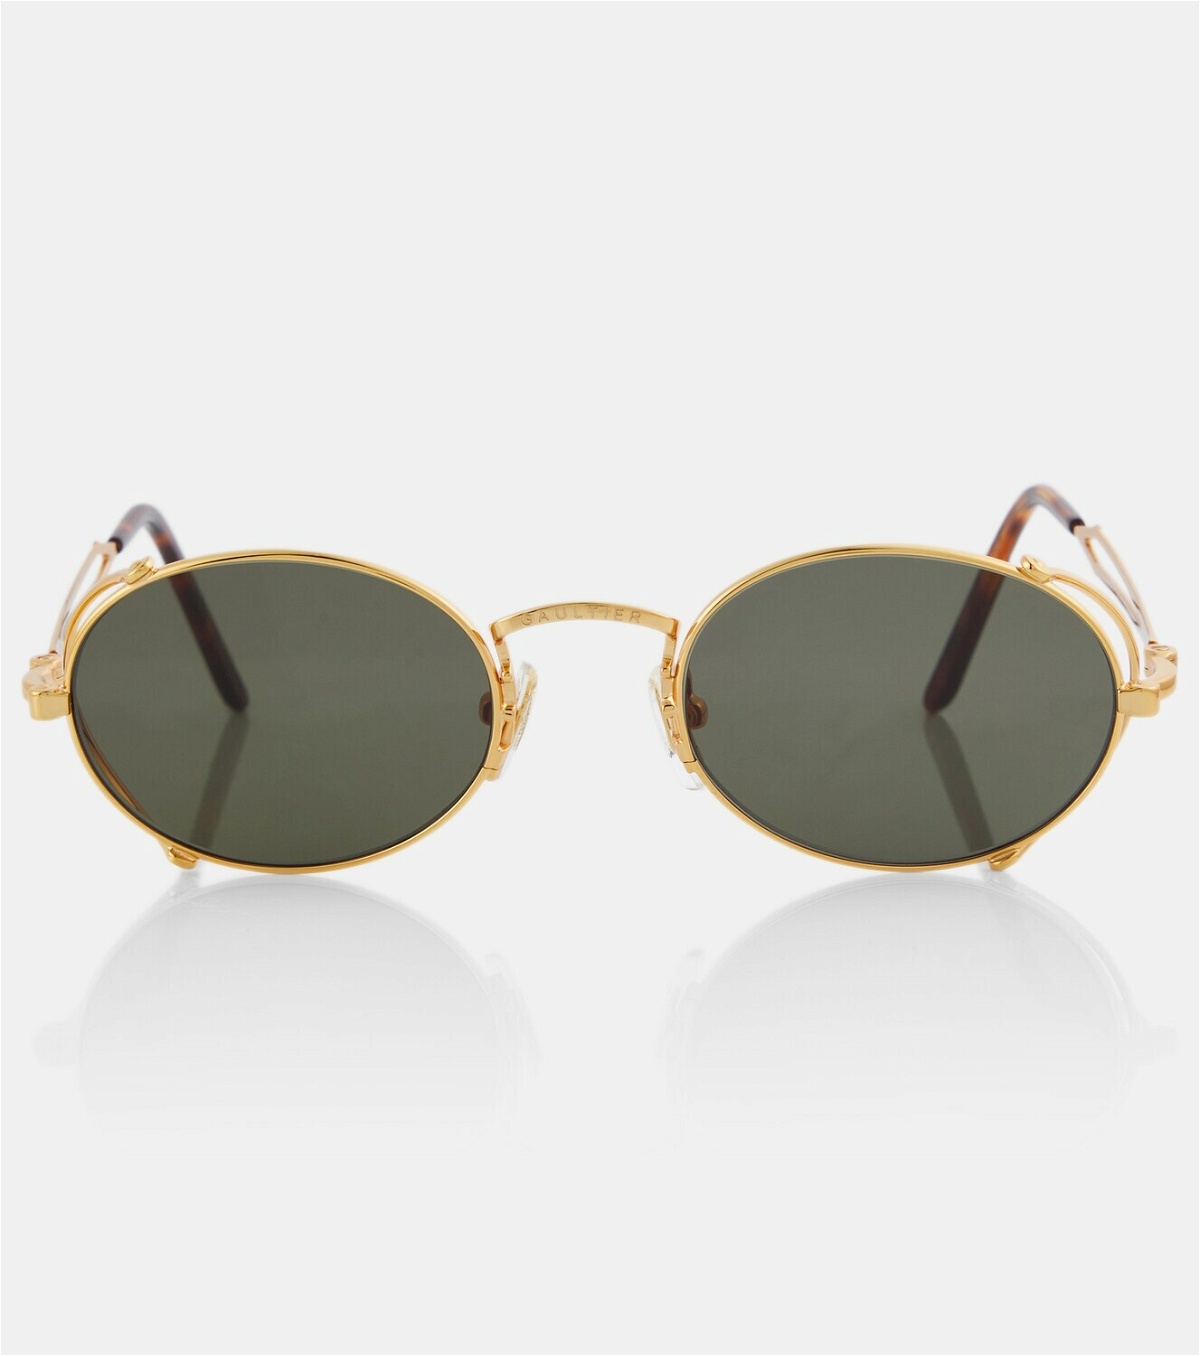 Jean Paul Gaultier 55-3175 round sunglasses Jean Paul Gaultier